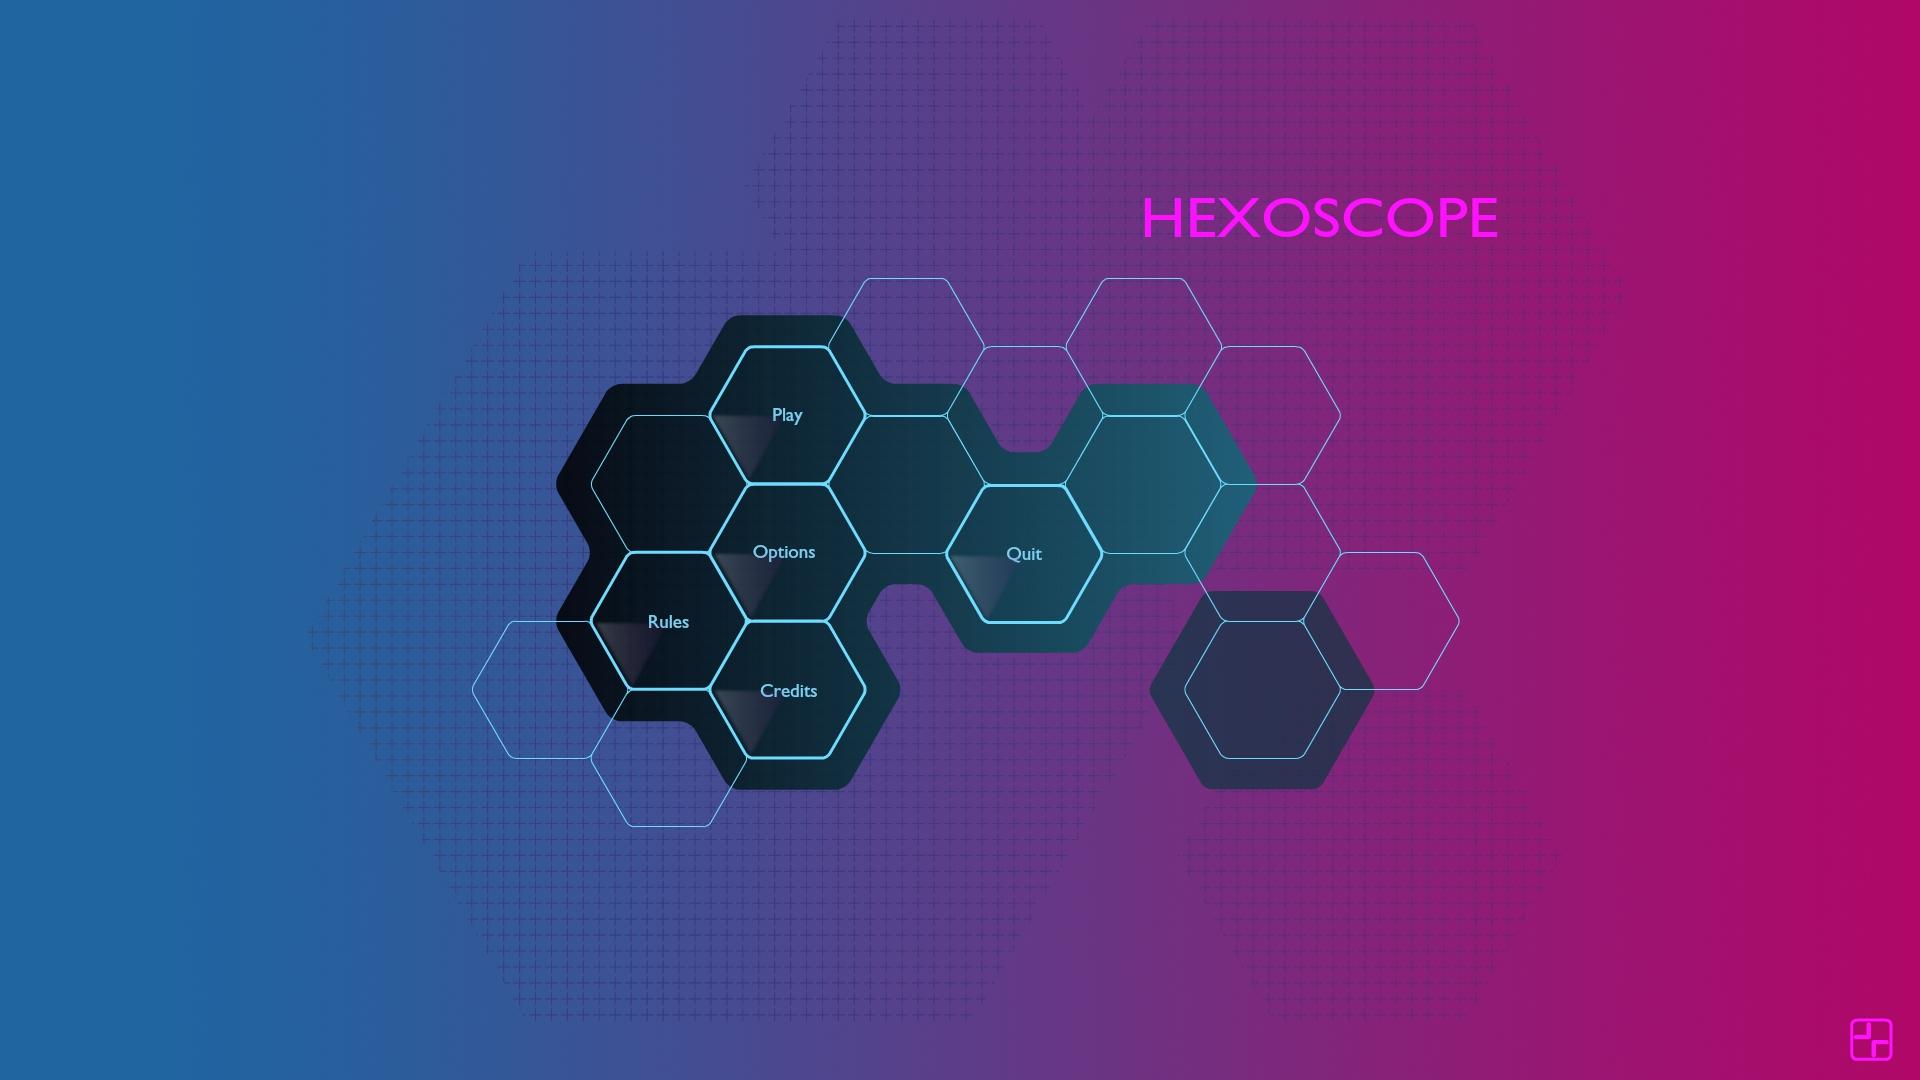 Screenshot №7 from game Hexoscope